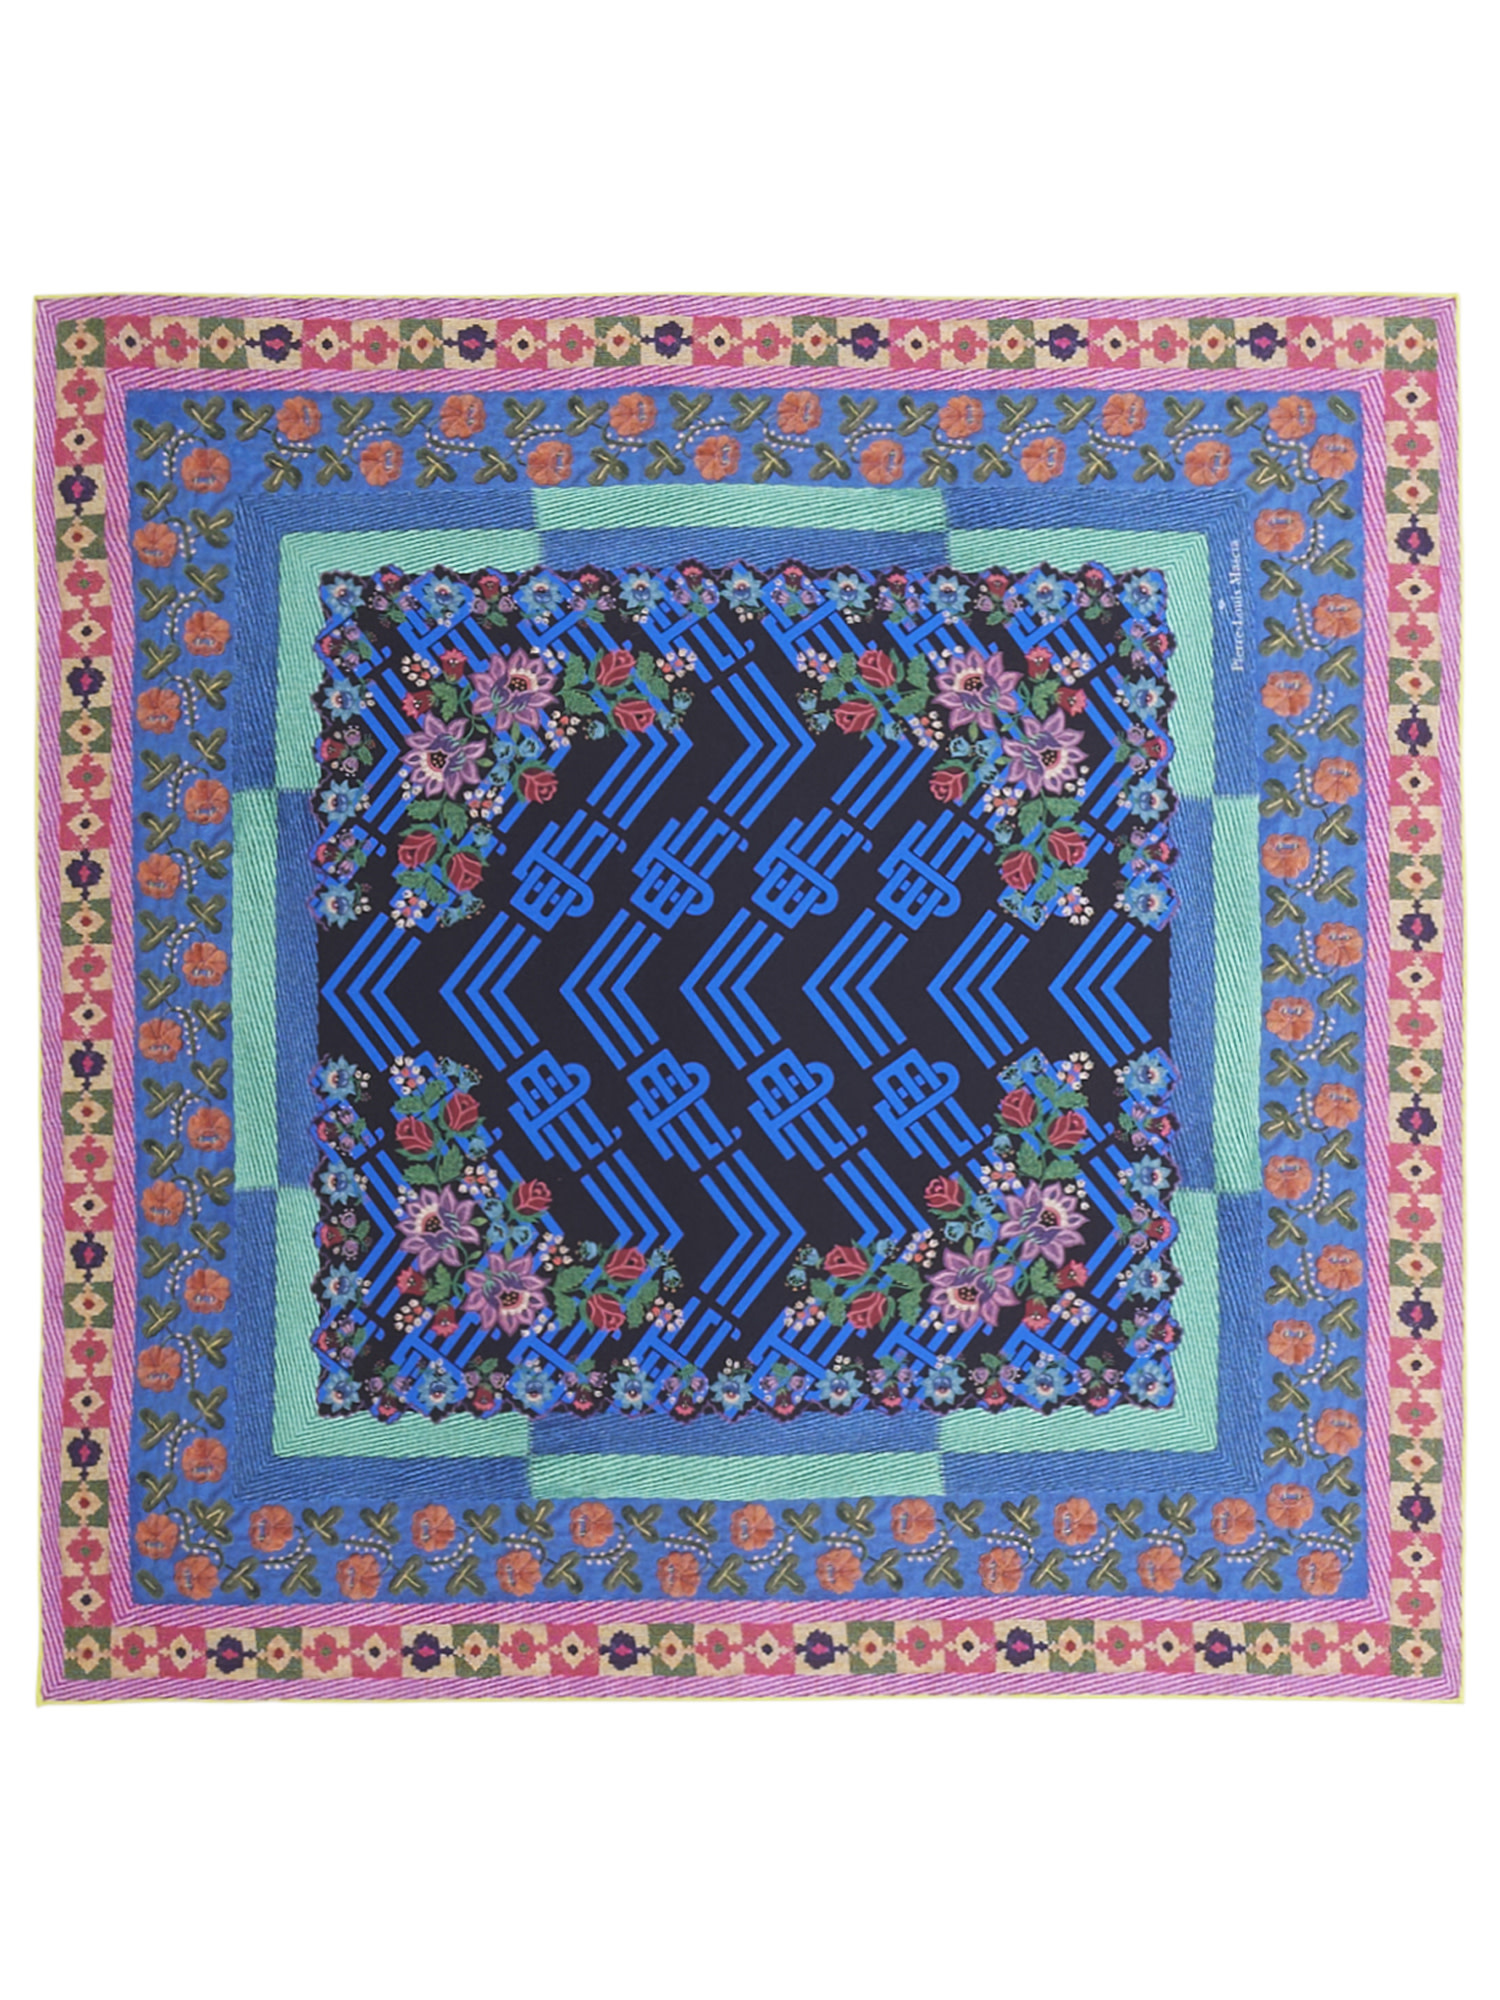 100% cotton scarf Pierre Louis Mascia colorful patchwork